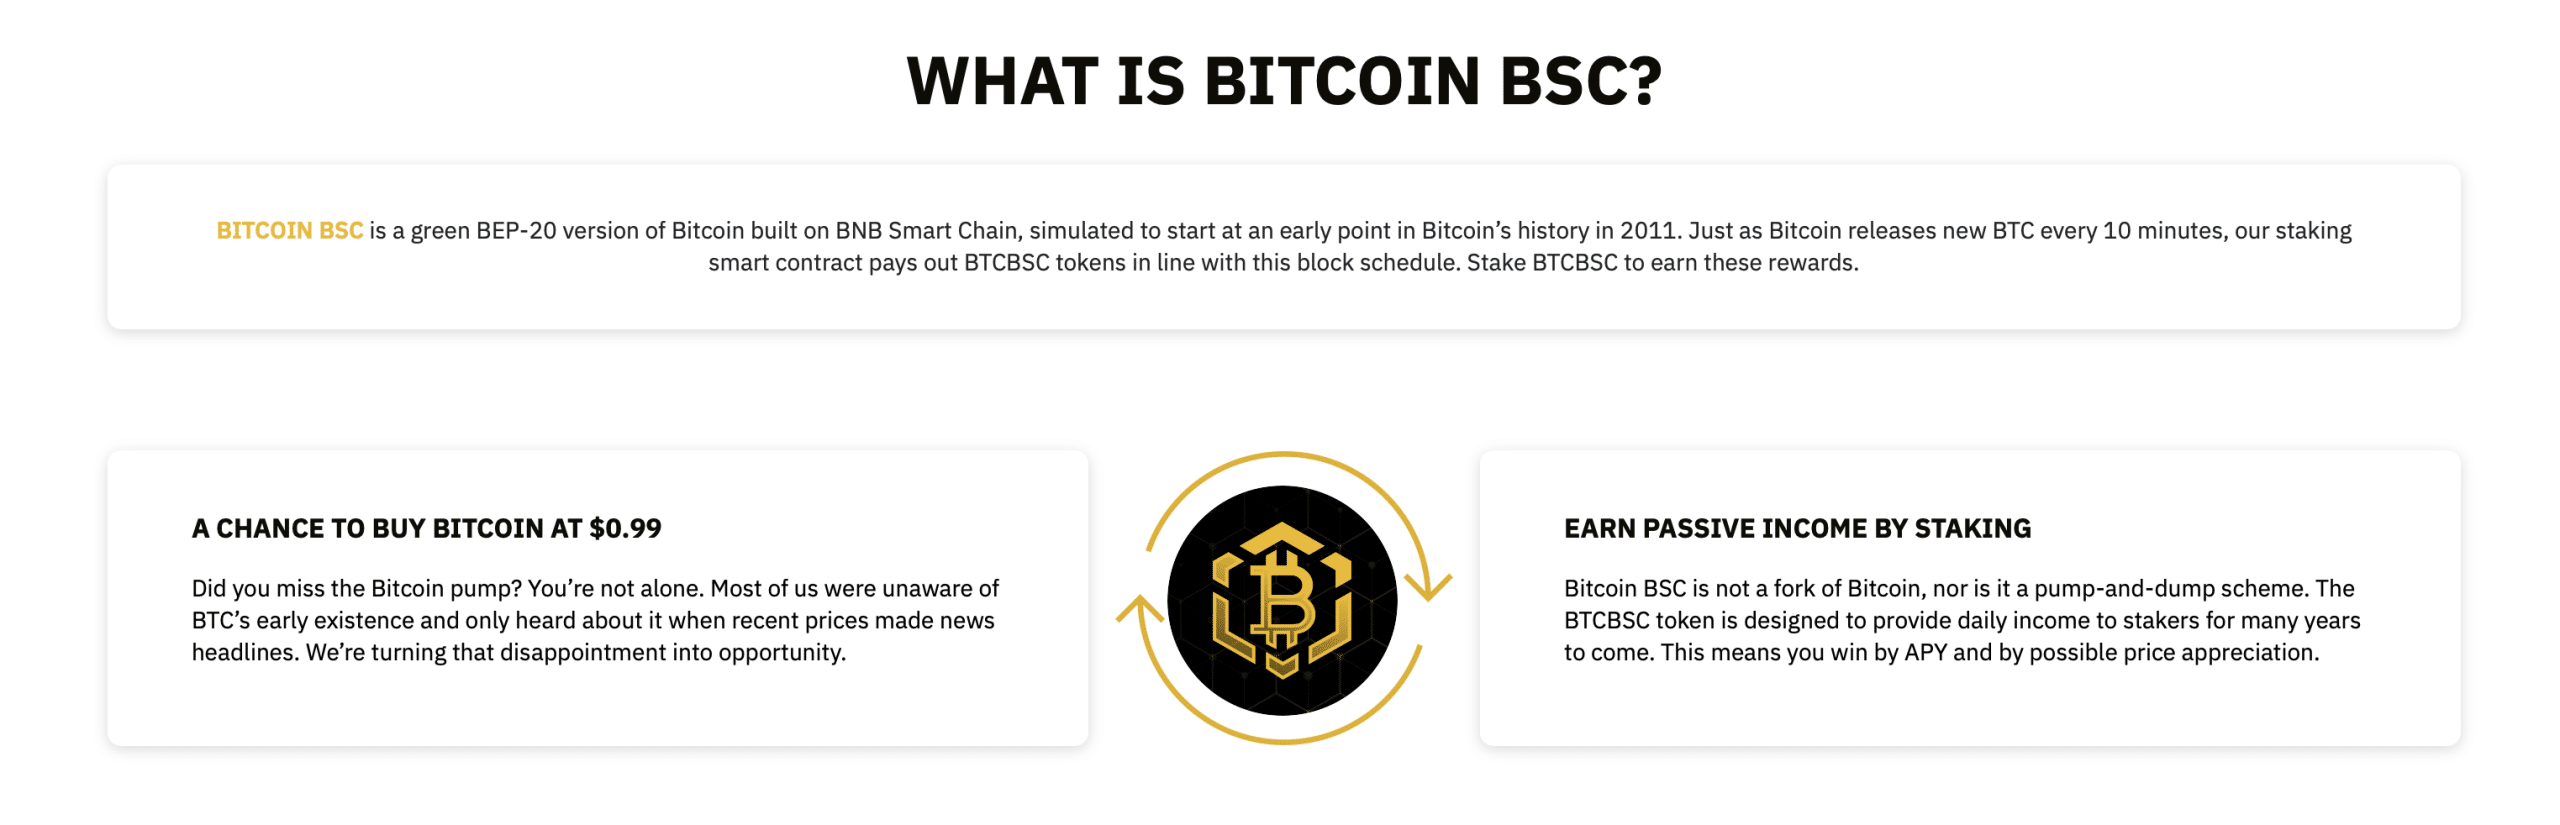 Erklärung Bitcoin BSC